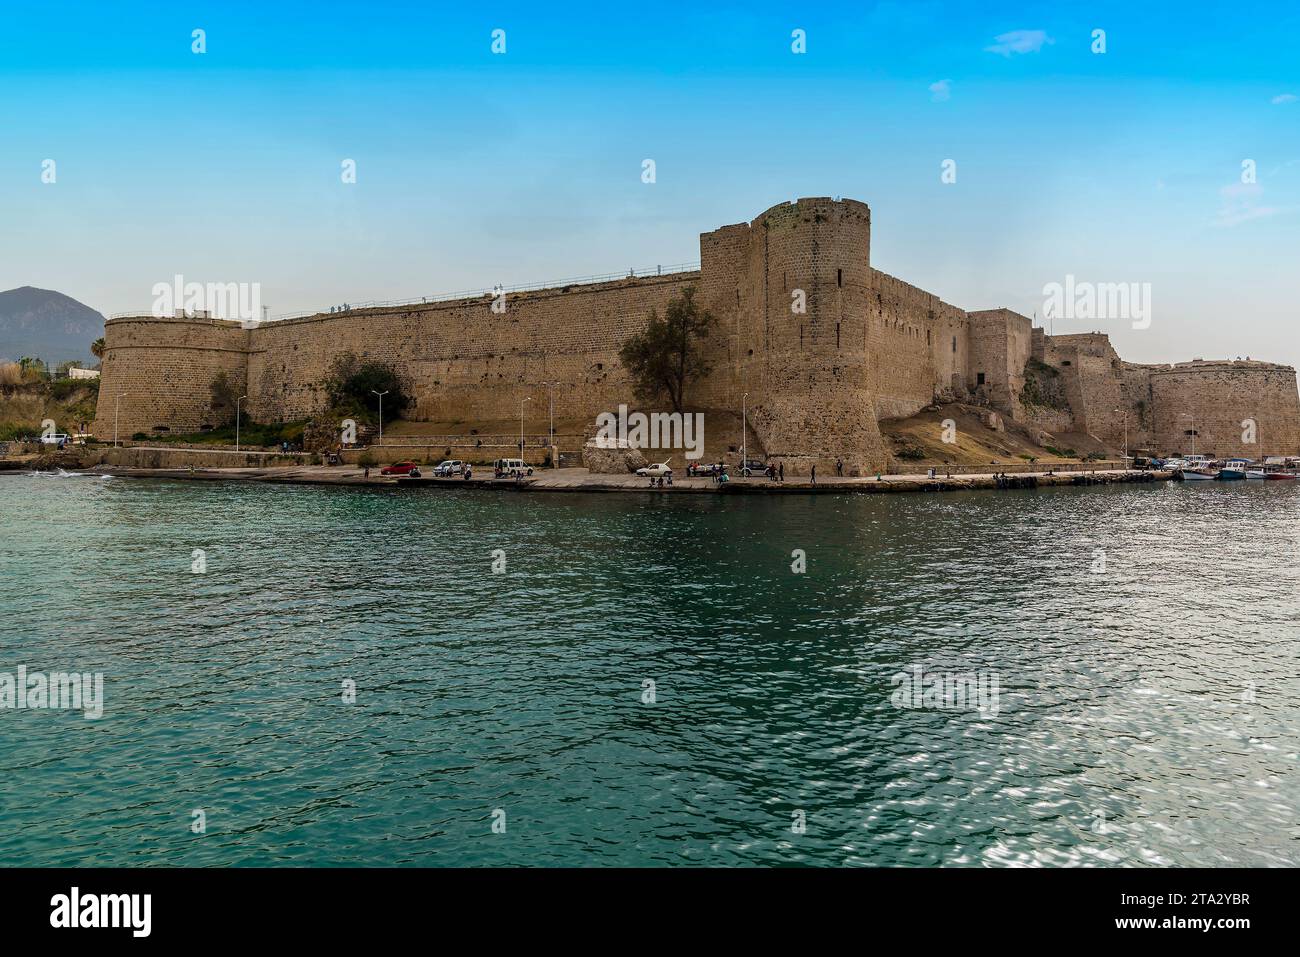 La forteresse à l'entrée du port de Kyrenia, Chypre au printemps Banque D'Images